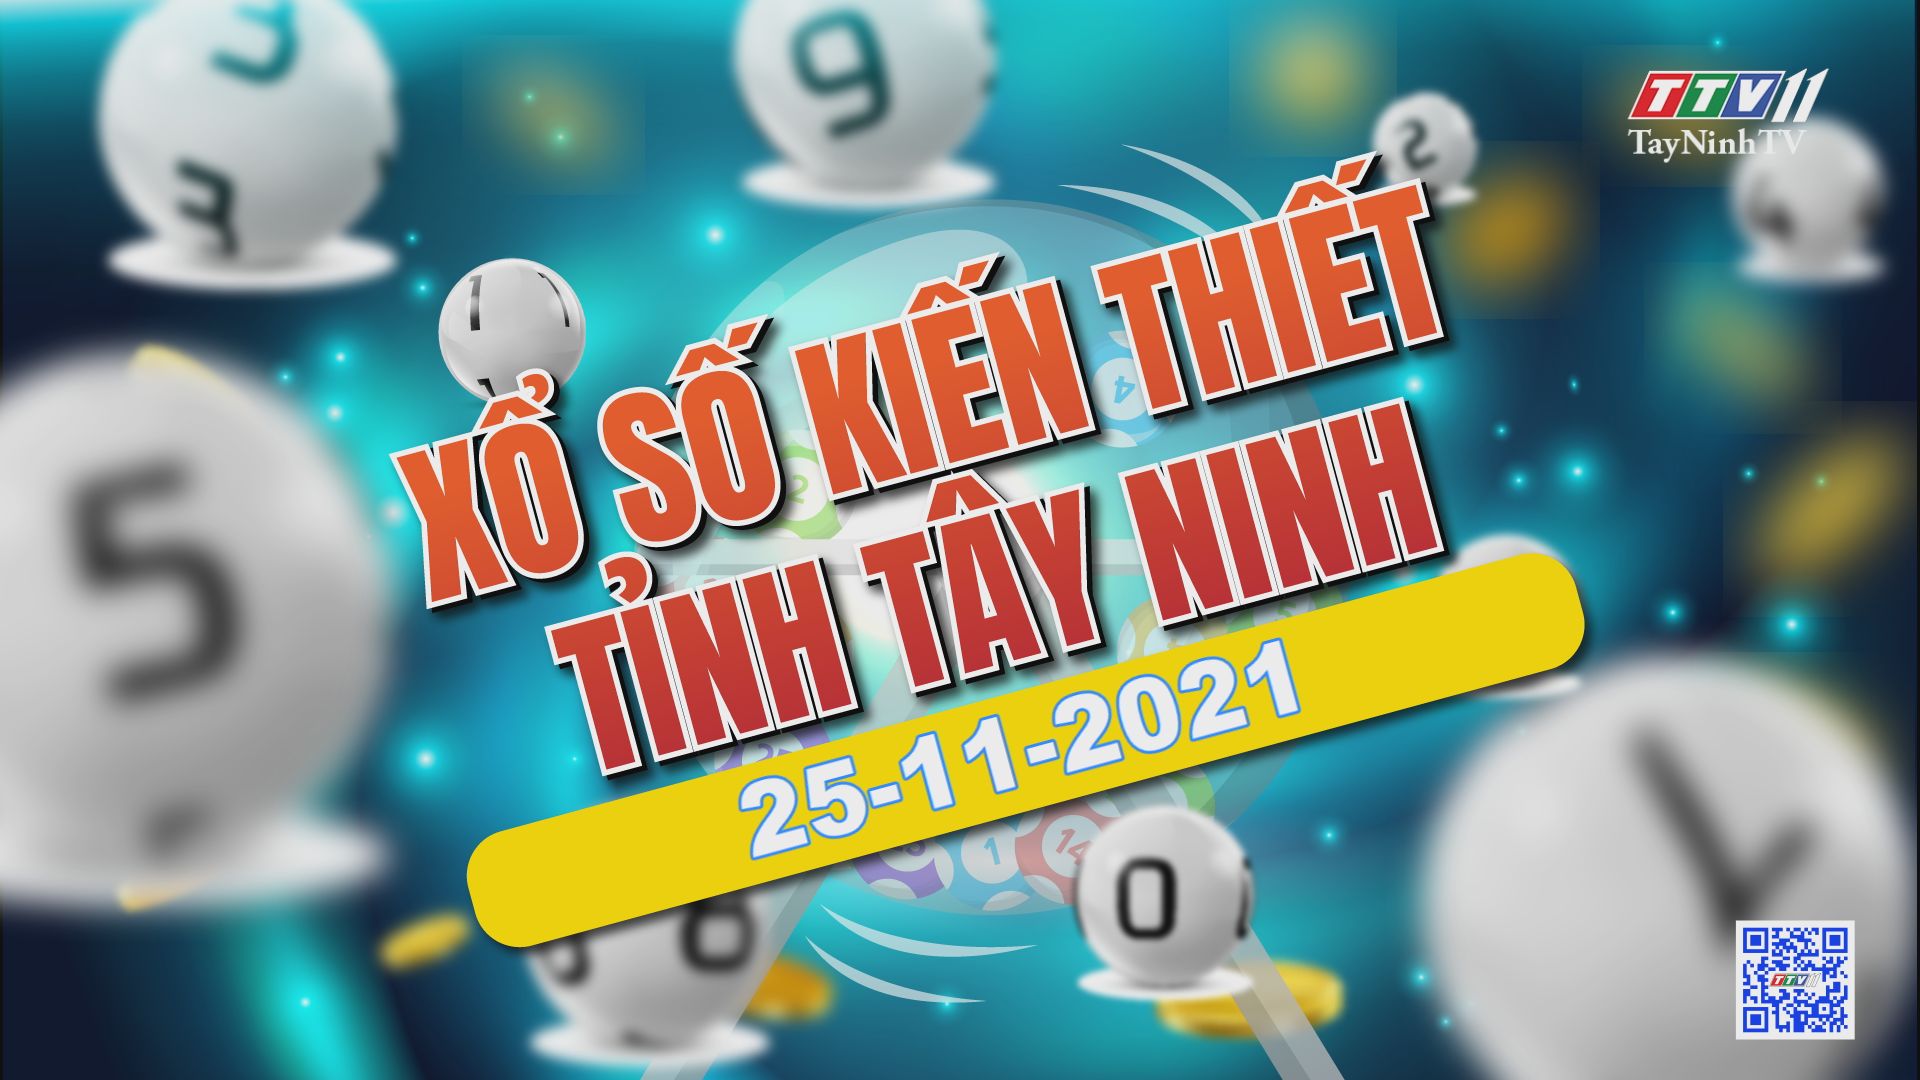 Trực tiếp Xổ số Tây Ninh ngày 25-11-2021 | TayNinhTVE